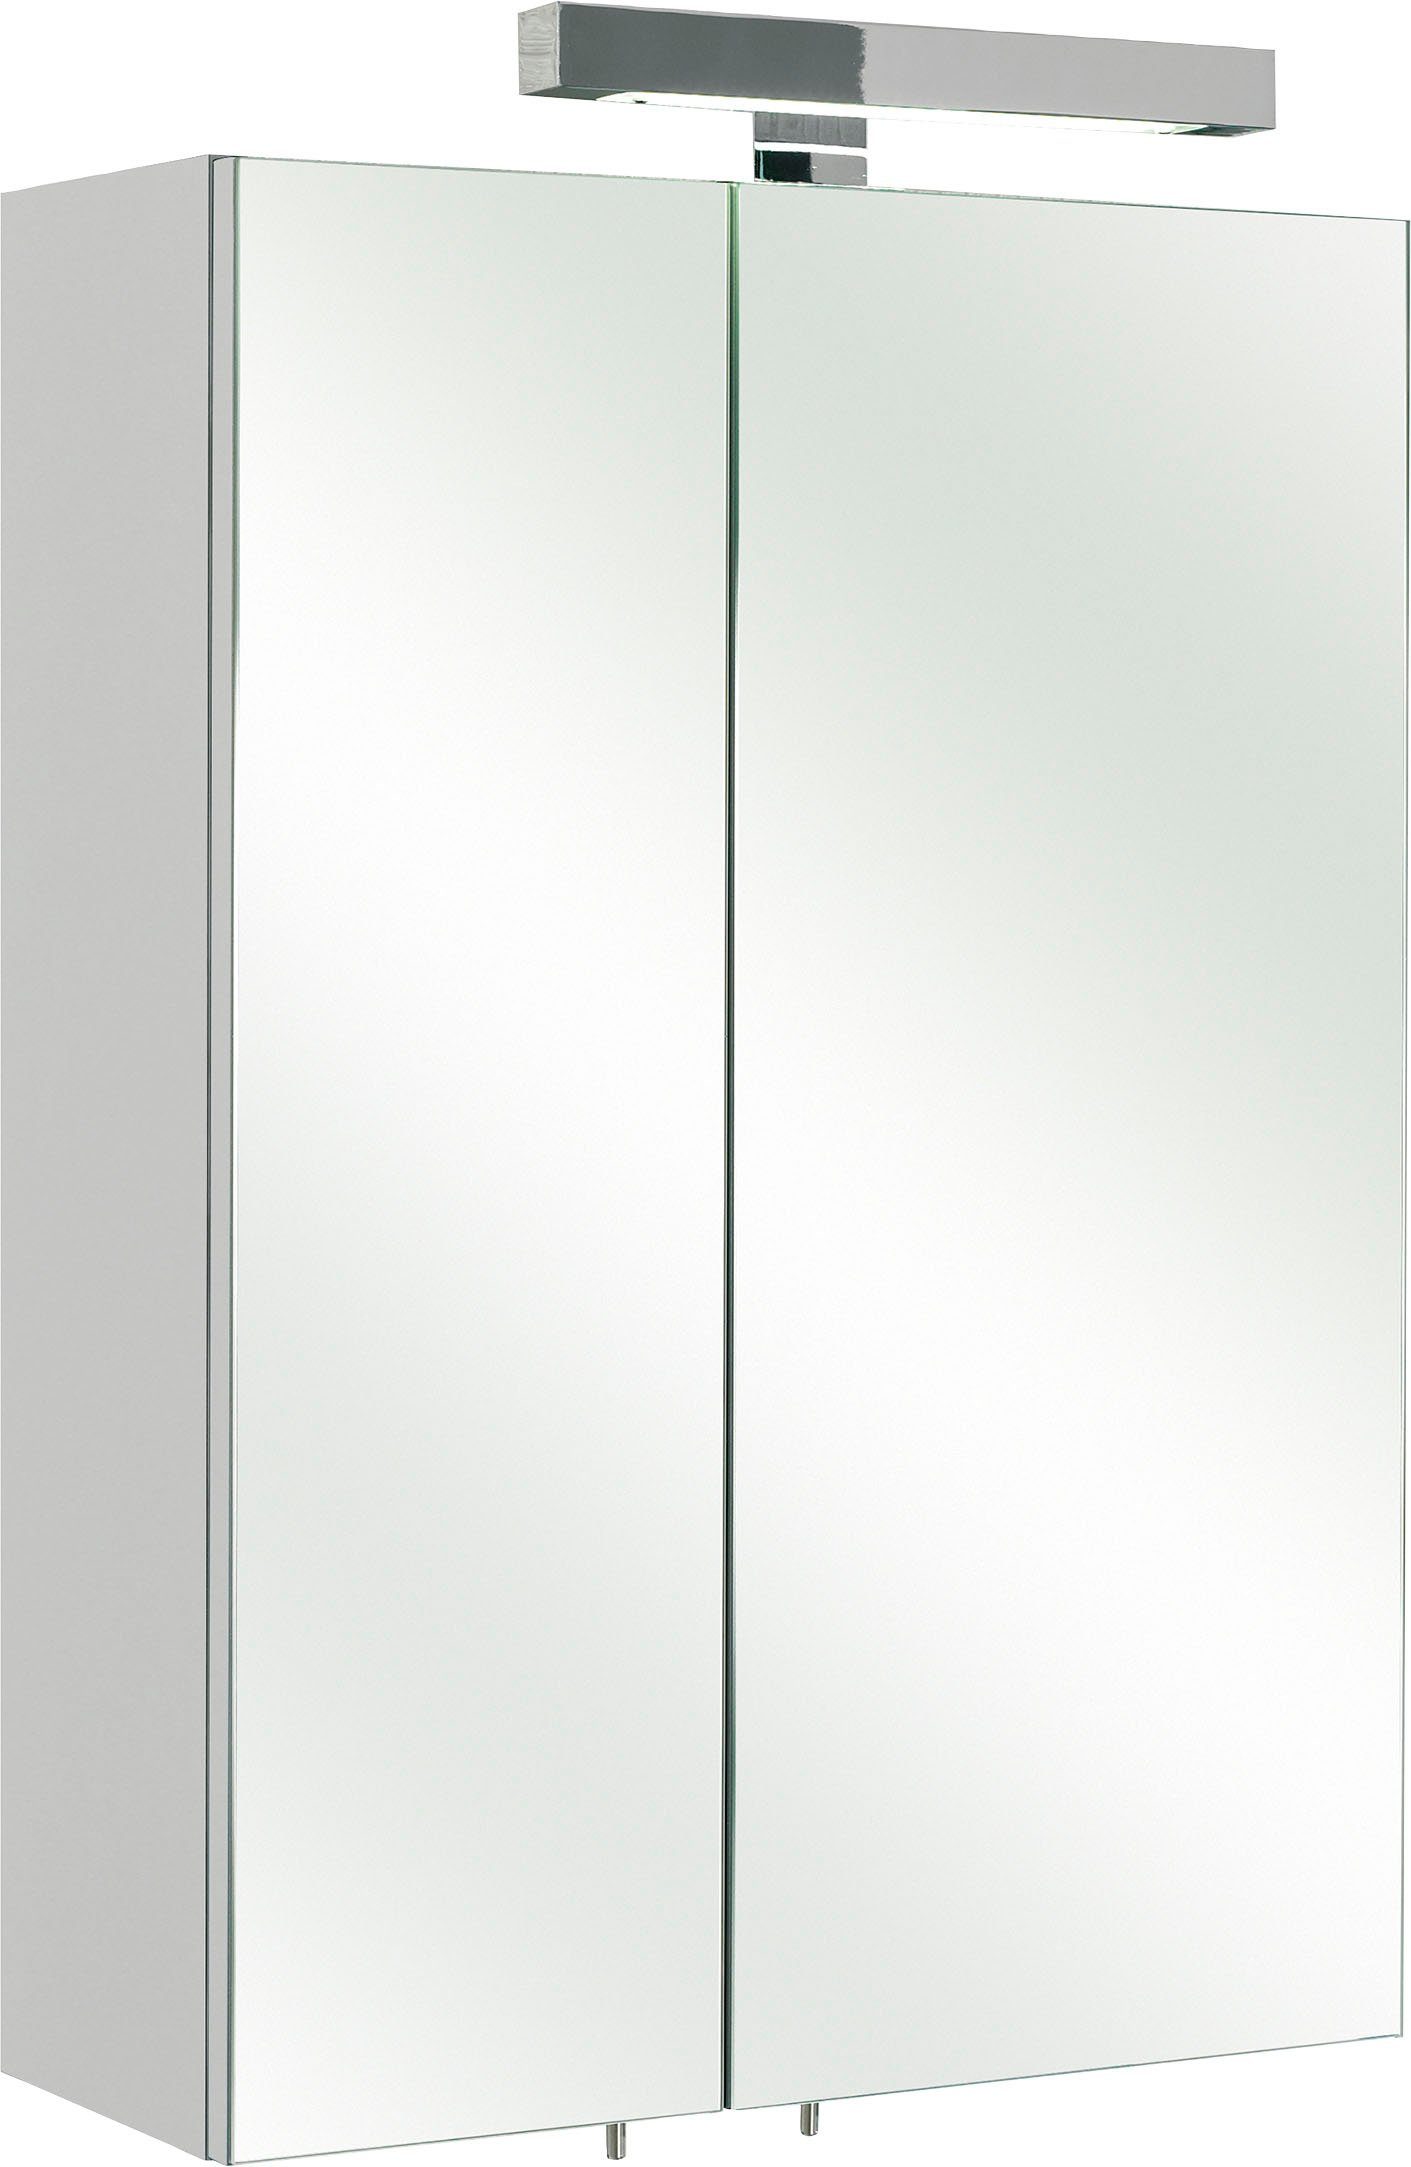 PELIPAL Spiegelschrank Quickset 311 Weiß Glanz | Weiß Glanz | Spiegelschränke